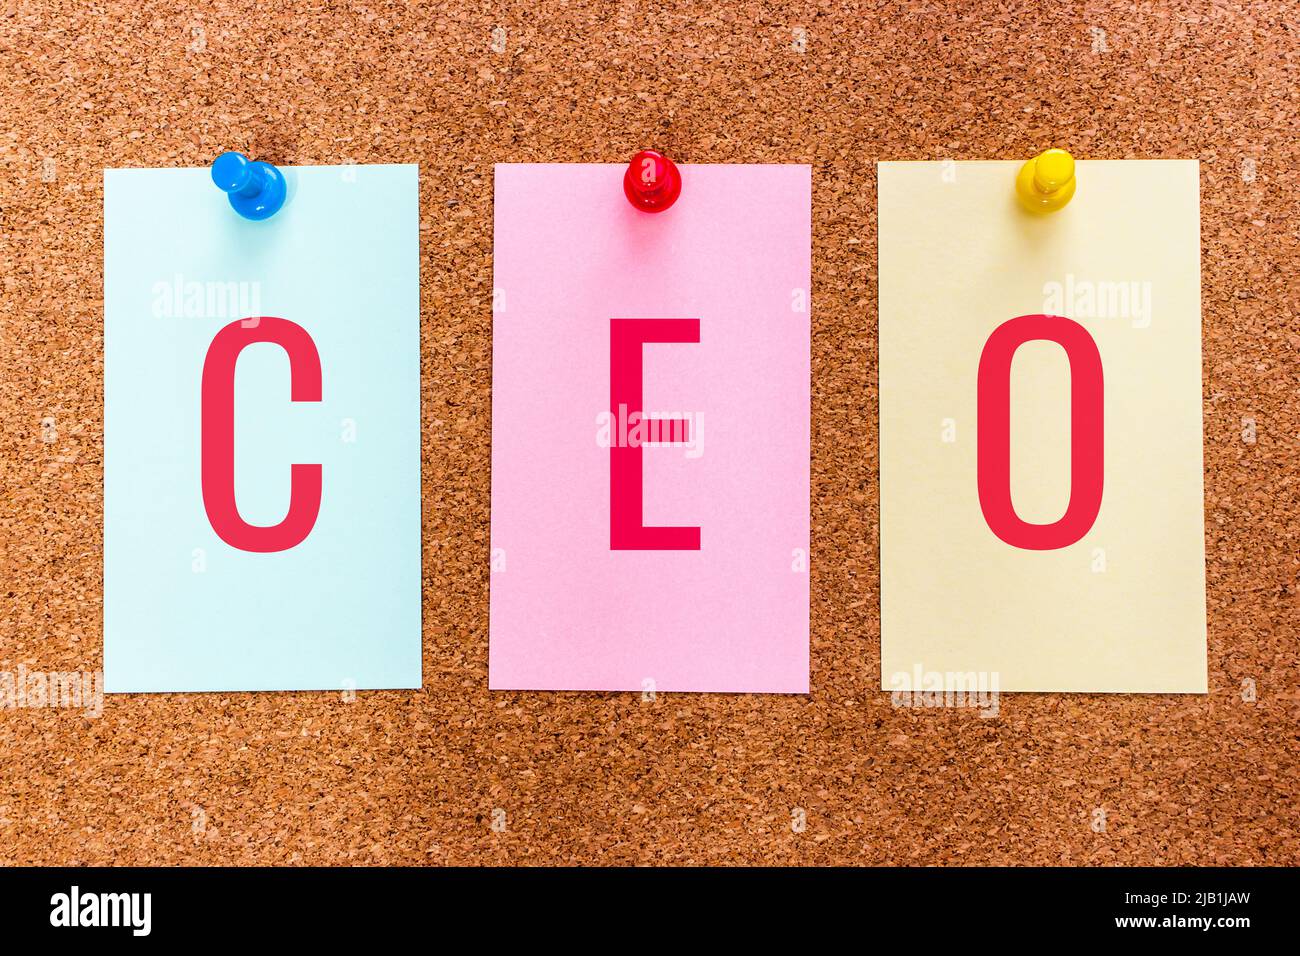 3 Buchstaben Abkürzung CEO (Chief Executive Officer), Führungskräfte, die für die Leitung einer Organisation verantwortlich sind, auf Aufklebern, die an einem Korkbrett angebracht sind. Stockfoto